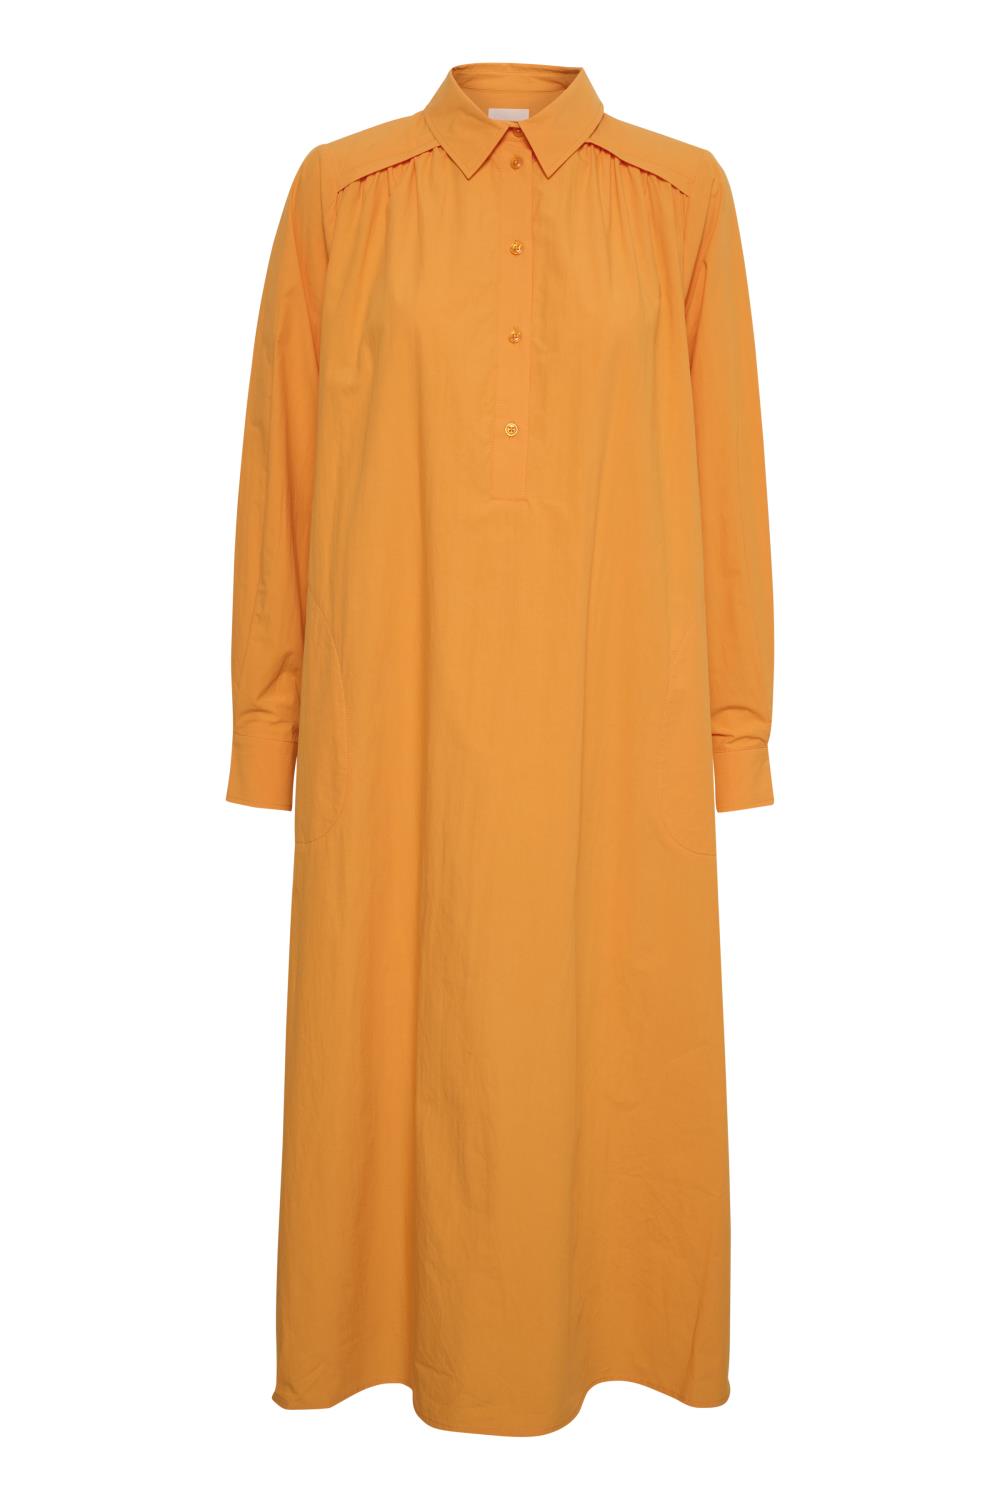 Part Two Smilla Dress, oransje